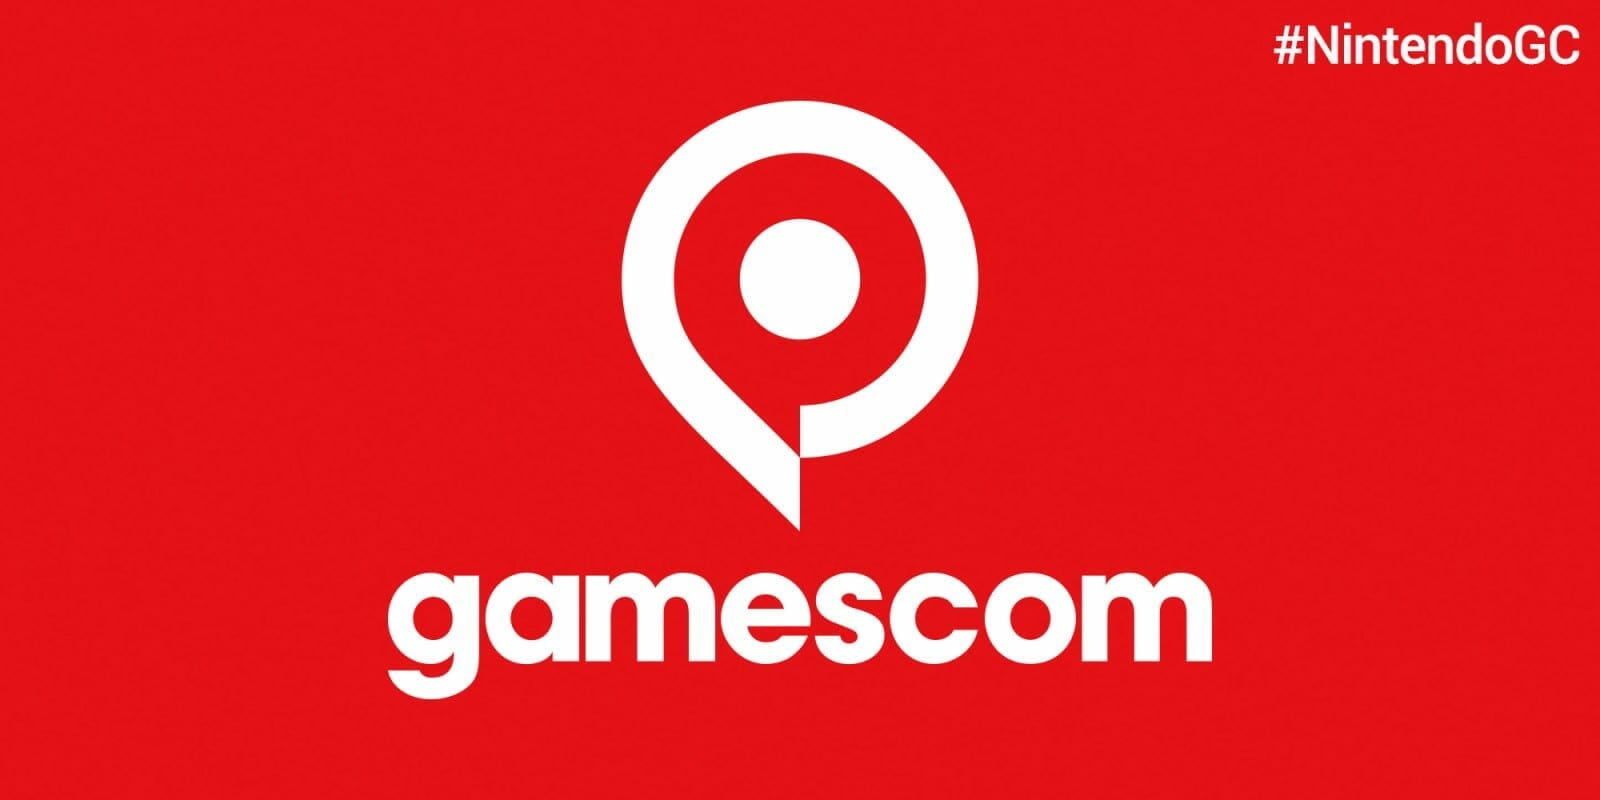 Nintendo's Gamescom 2018 lineup